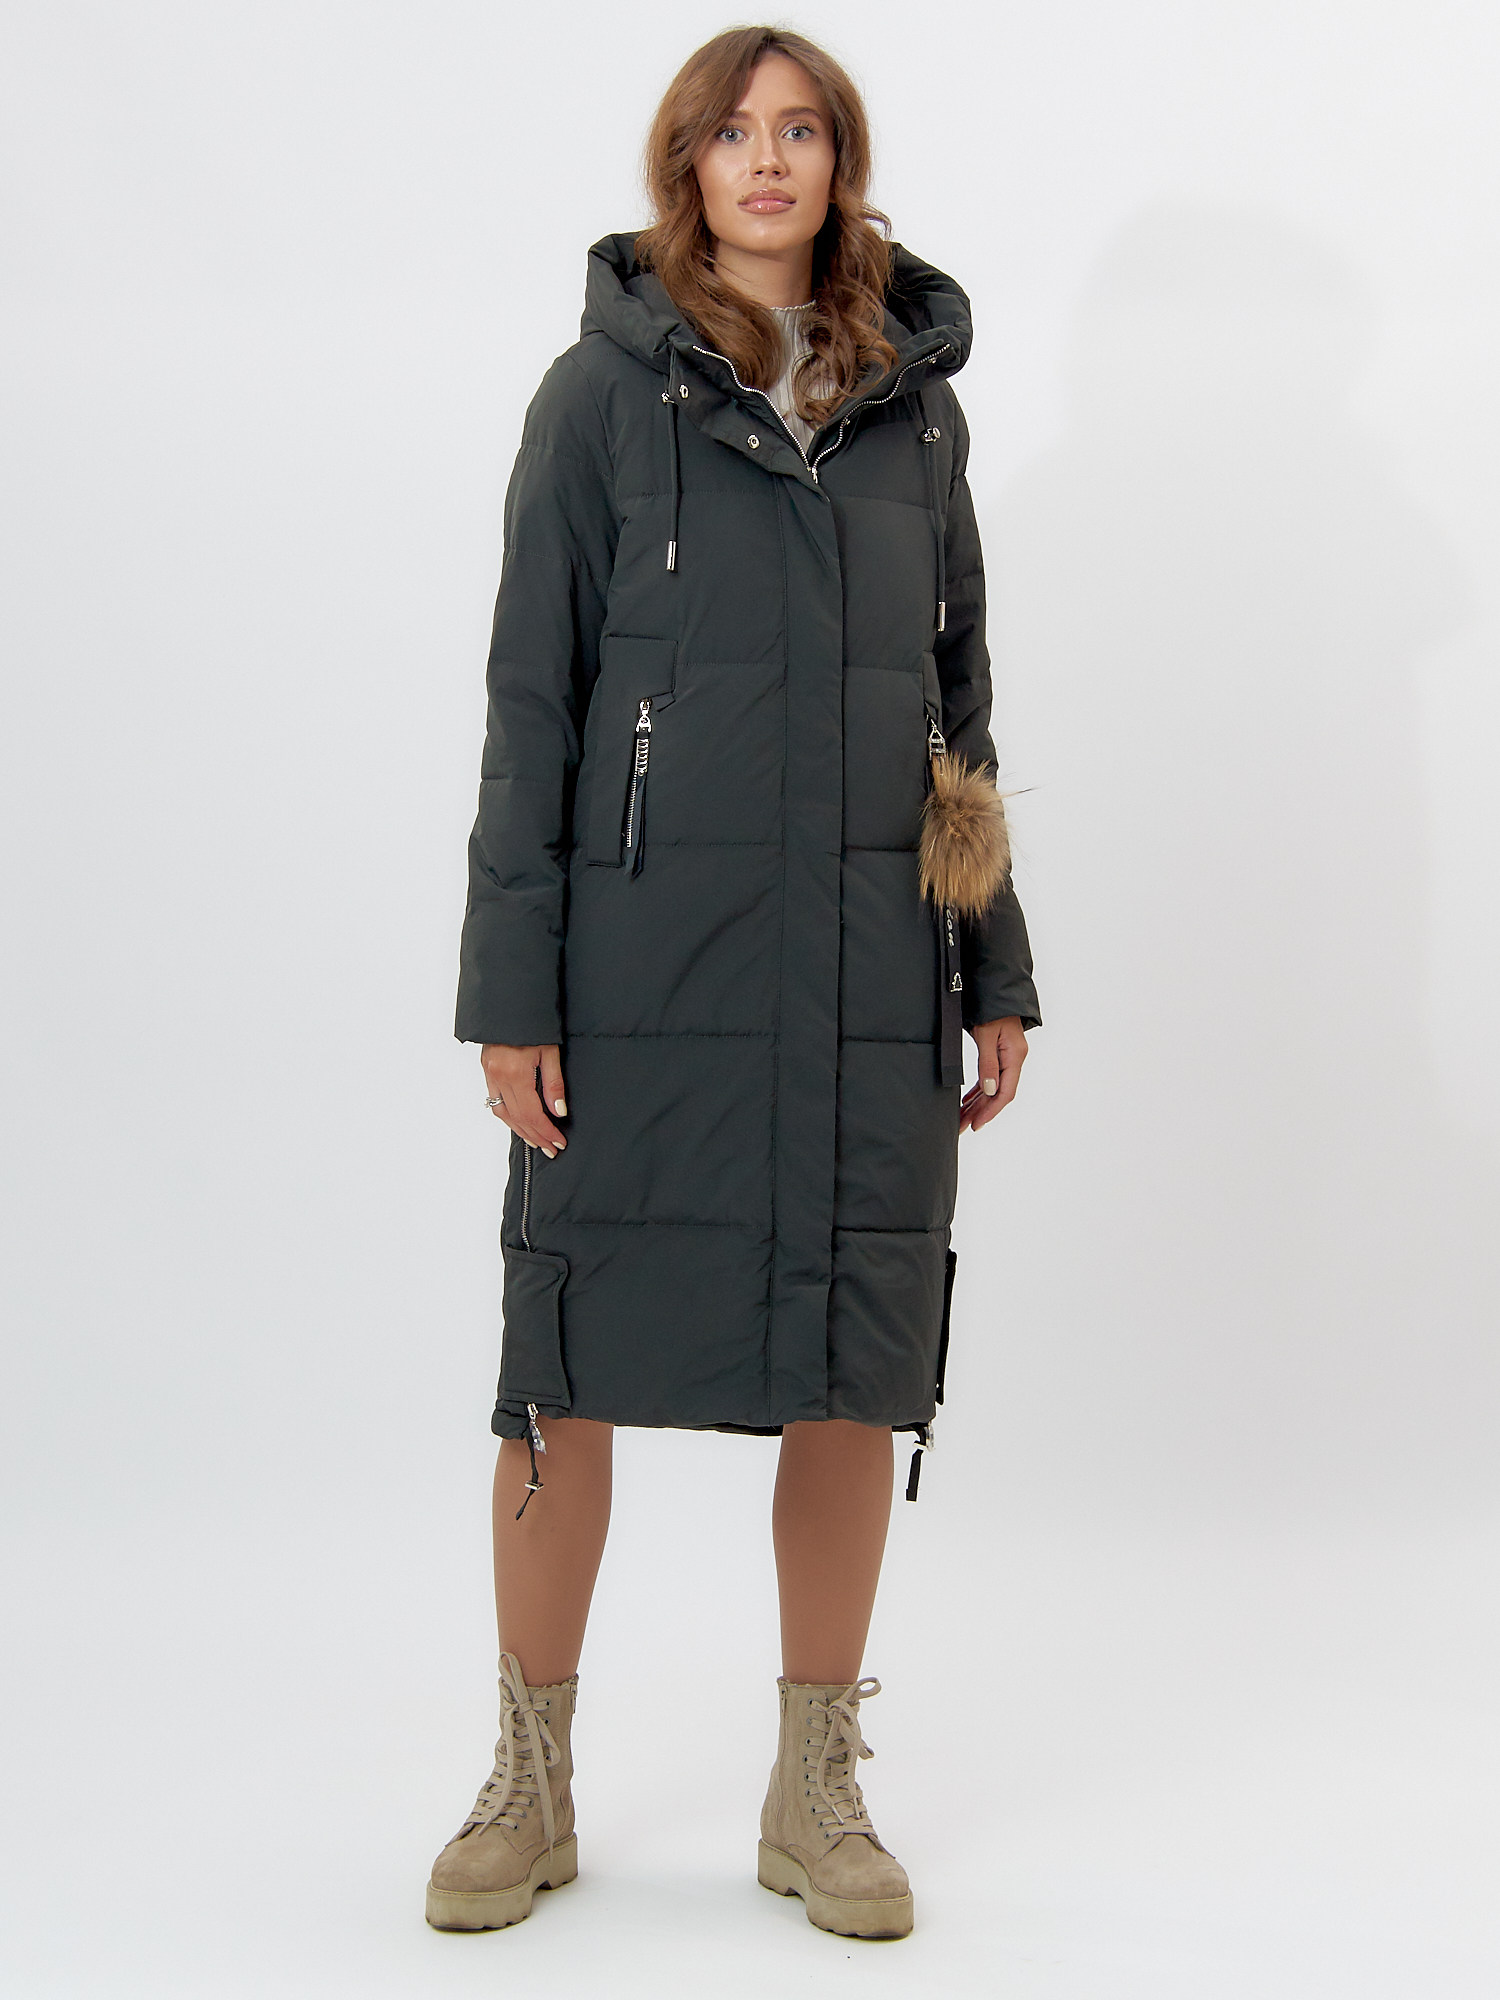 Купить Пальто утепленное женское зимние темно-зеленого цвета 11207TZ